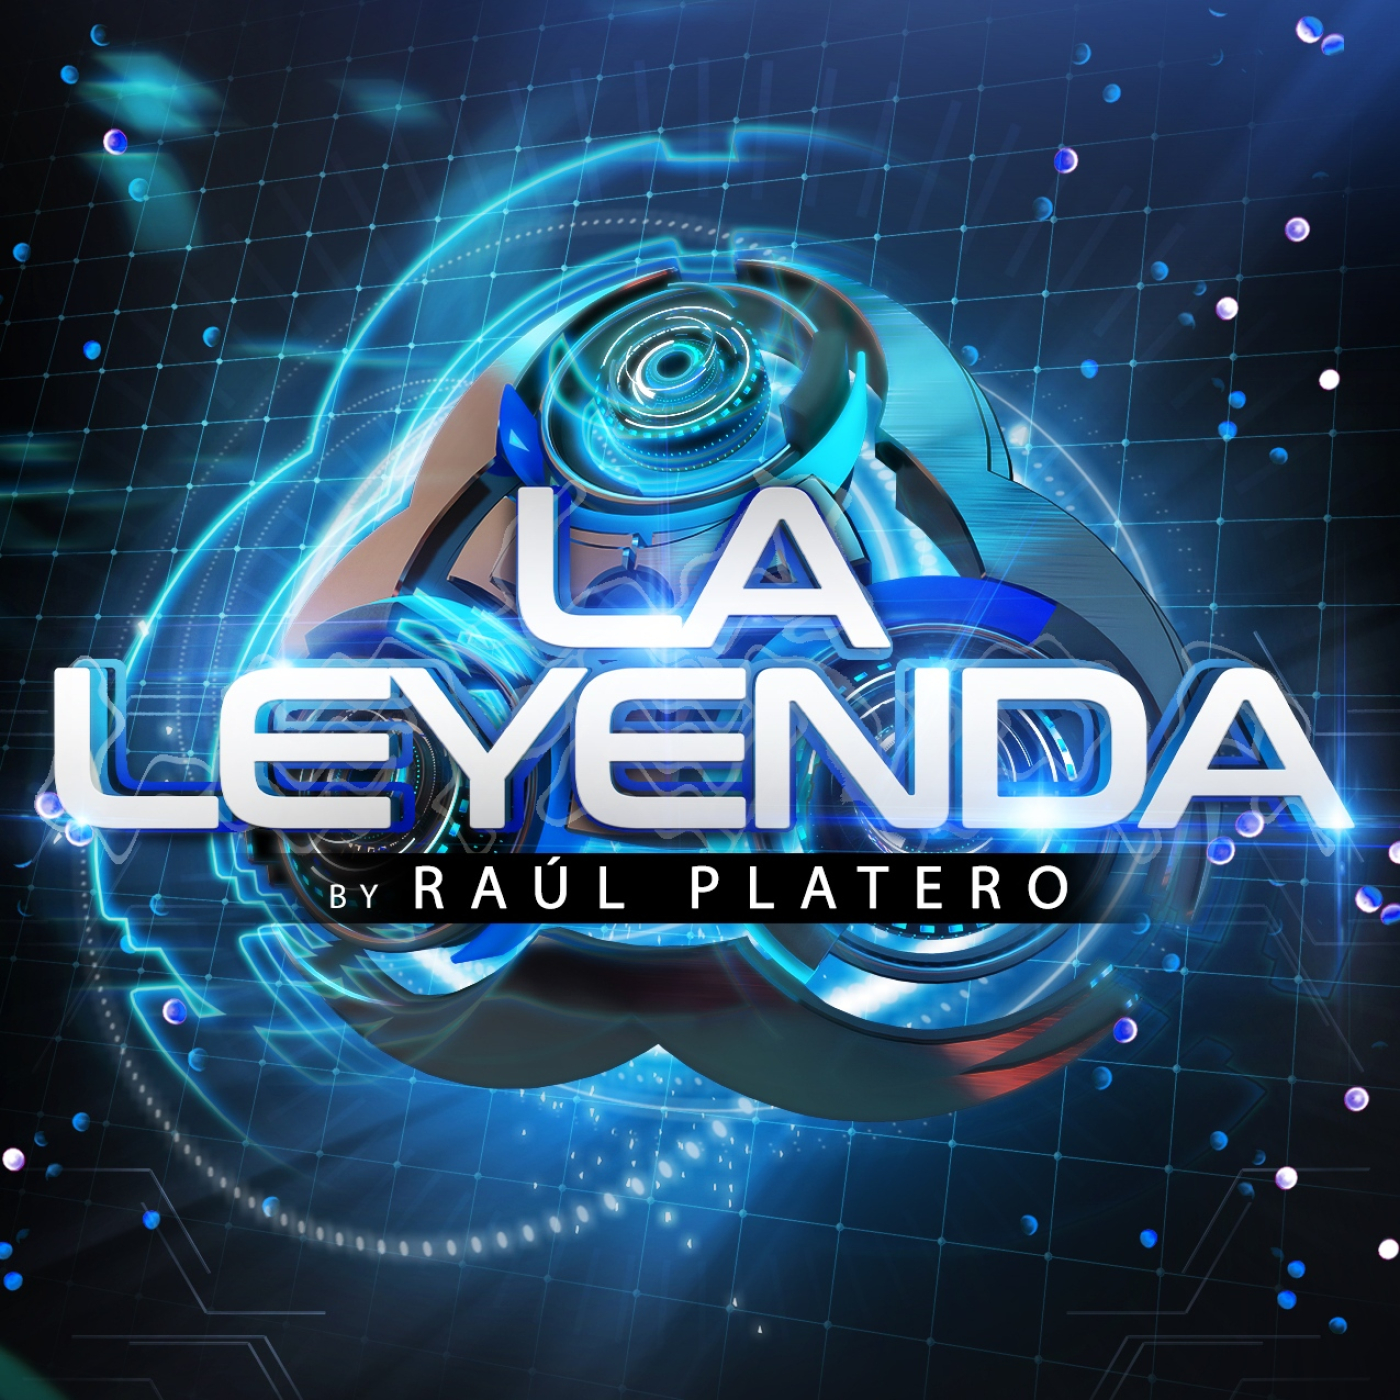 LA LEYENDA by RAUL PLATERO 2022 (Jueves 27 Enero)